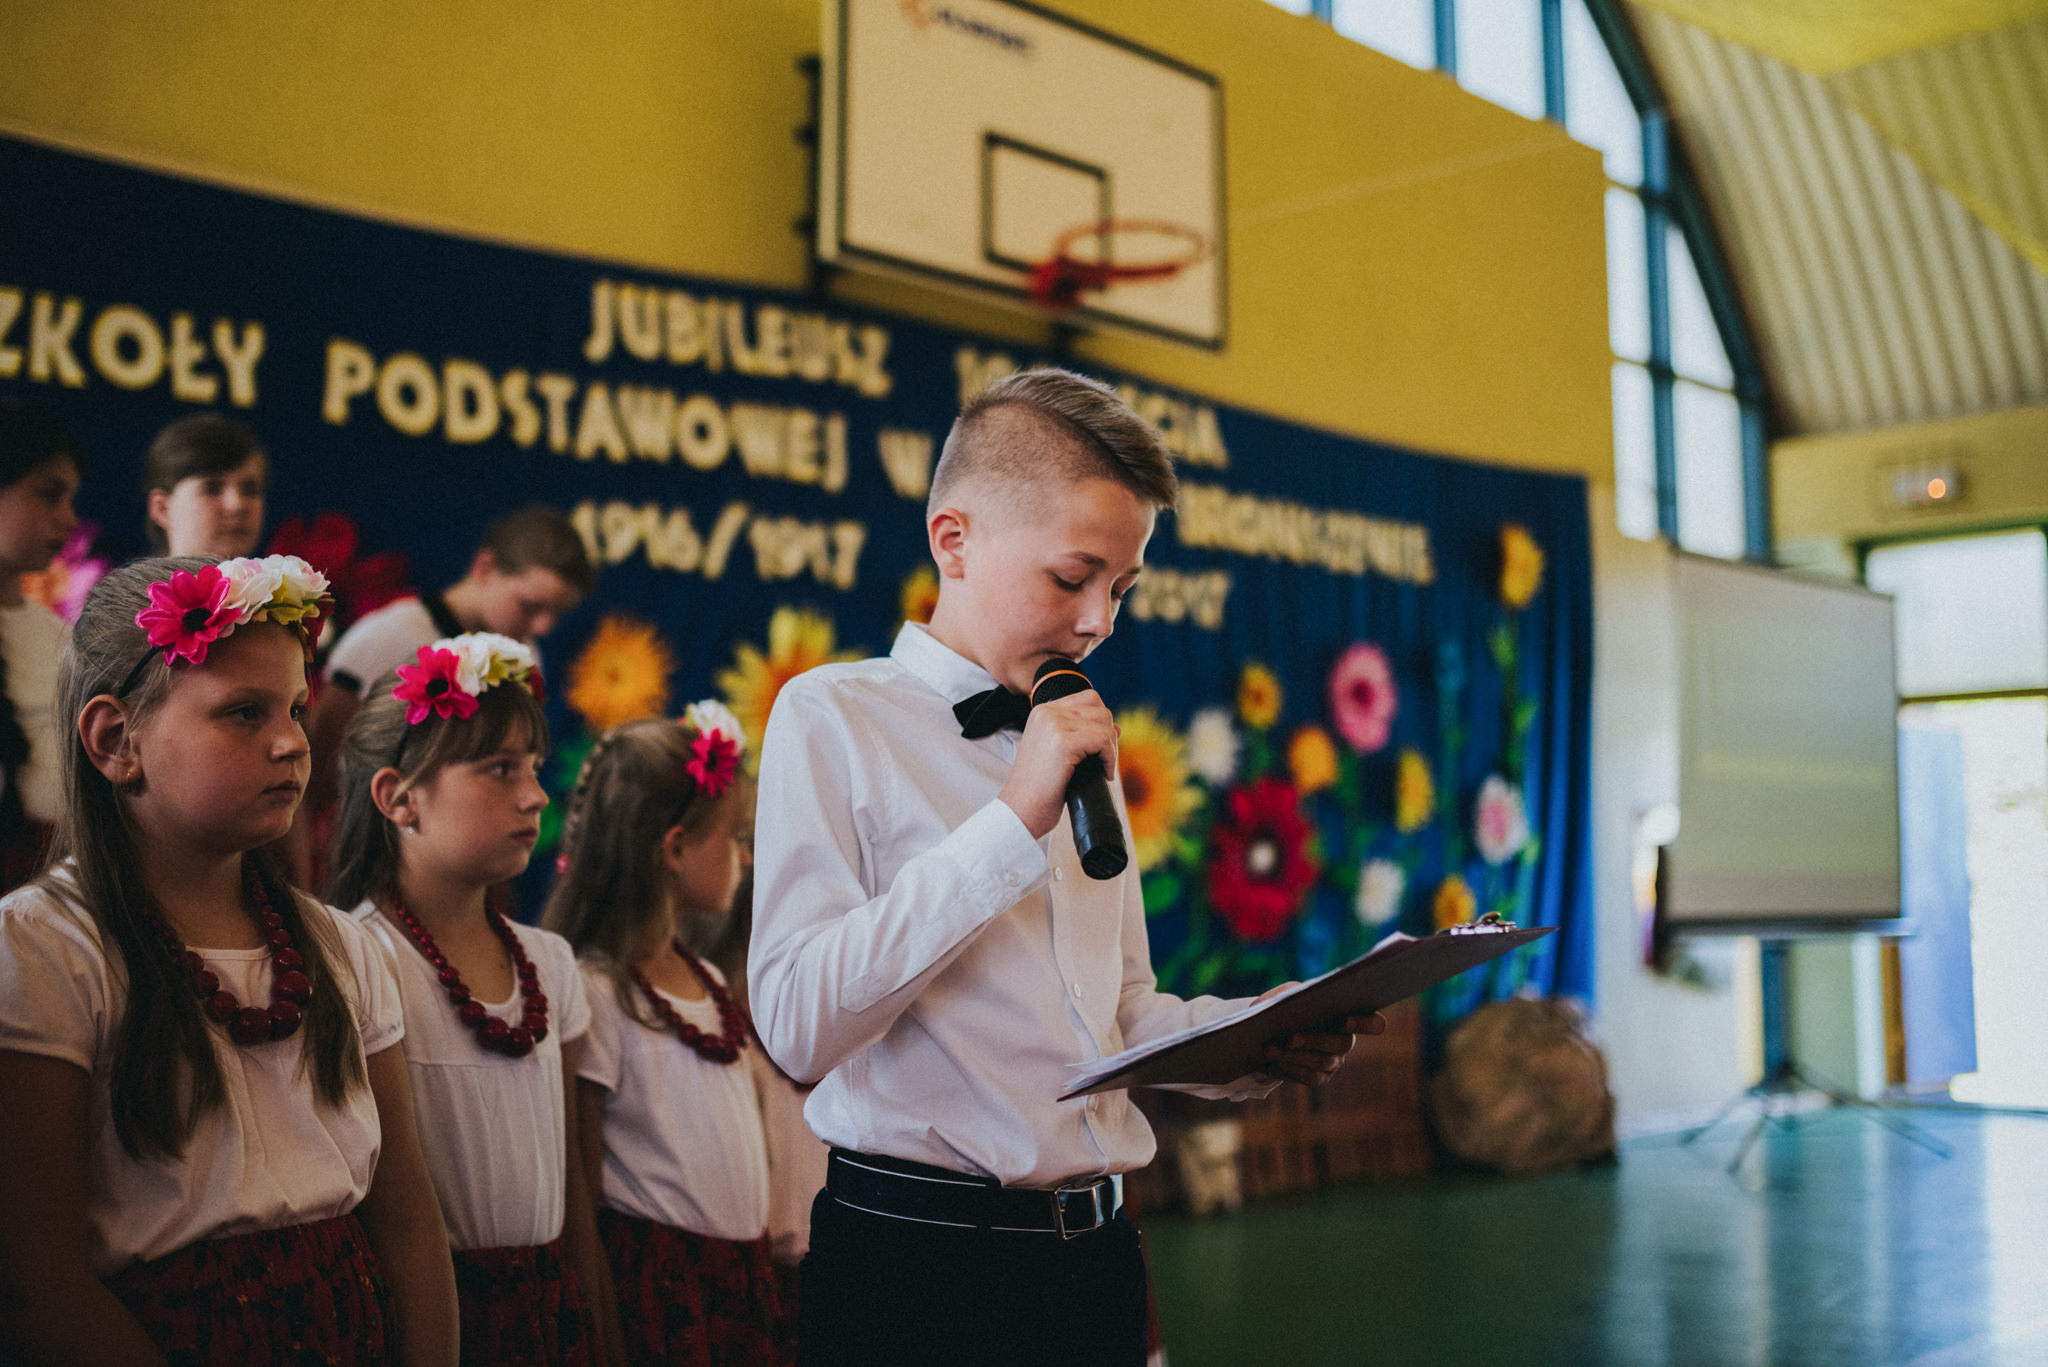 Jubileusz 100 lat | Szkoła Podstawowa w Starym Broniszewie